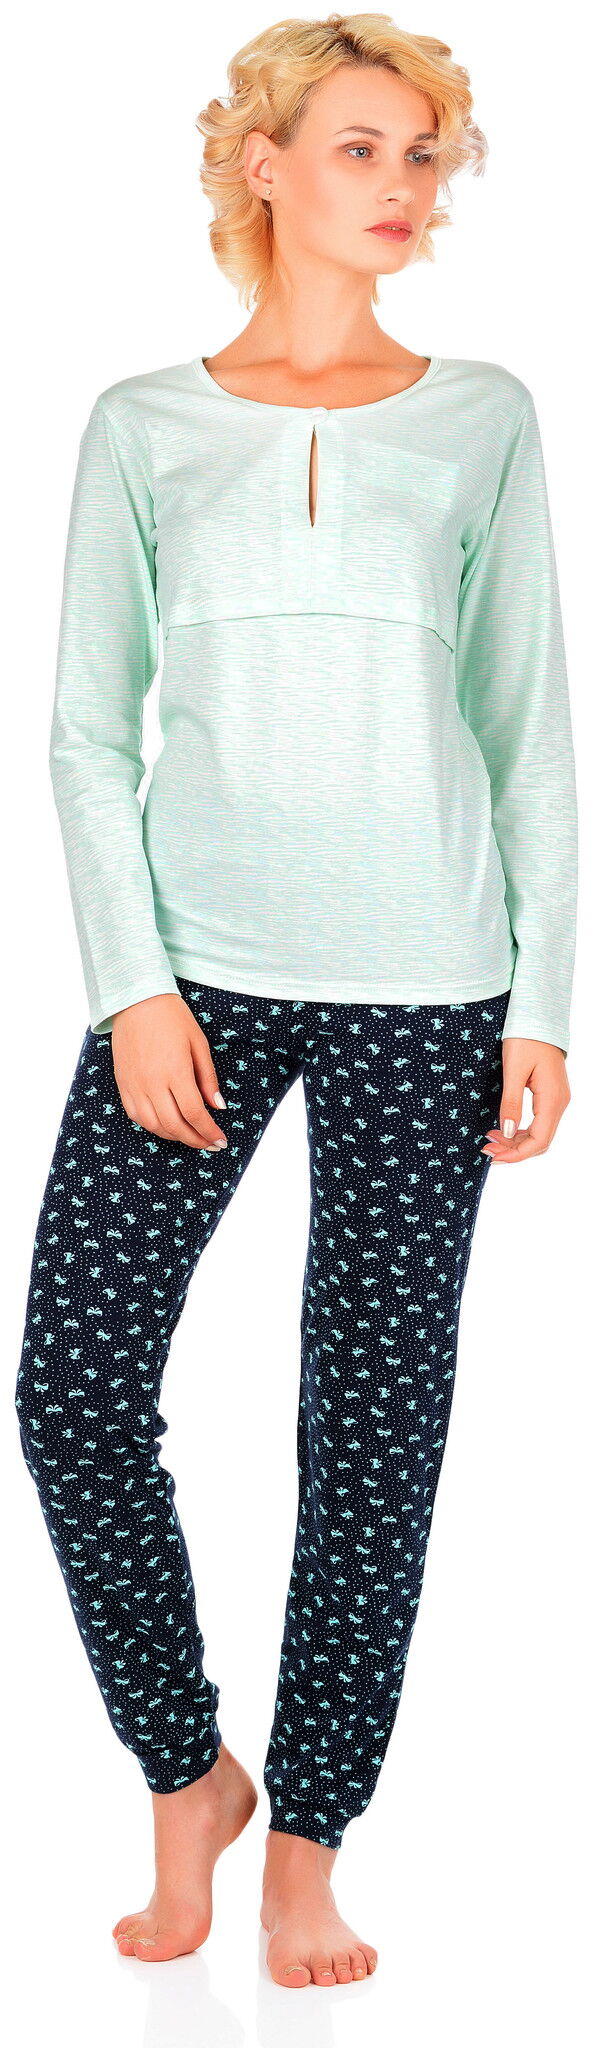 Комплект женский (кофта+штаны) BARWA мятный 00154/155 - цена